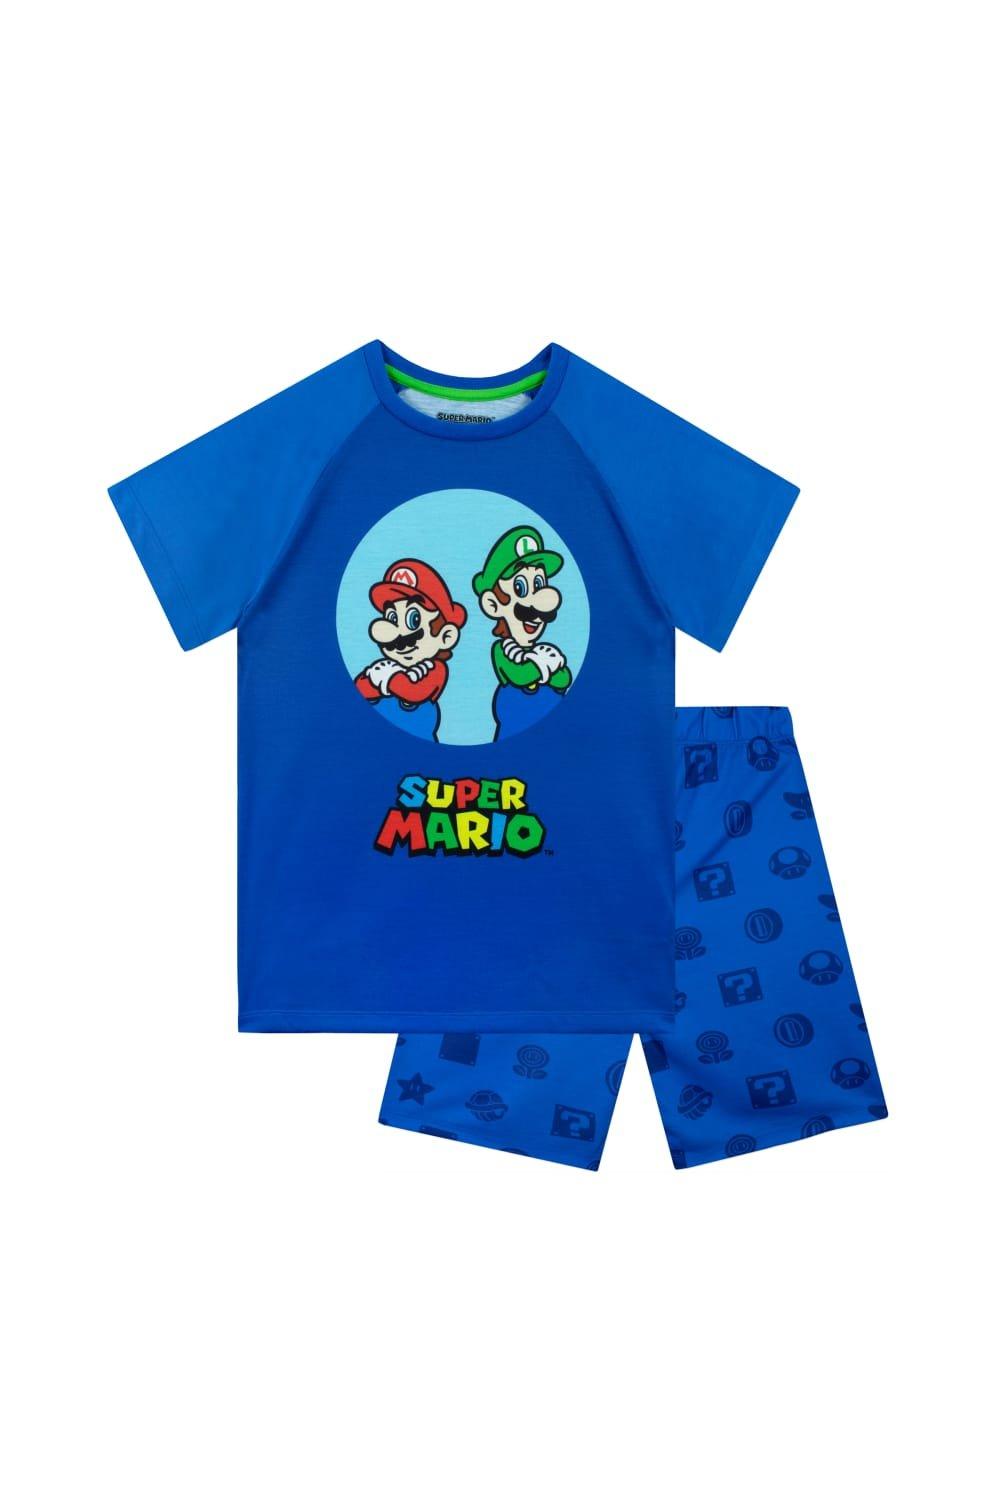 Короткие пижамы Марио и Луиджи Super Mario, синий 1 шт распродажа воздушные шары из фольги в стиле super mario bros аниме фигурка марио луиджи мультяшные аксессуары для украшения вечеринки на хэ